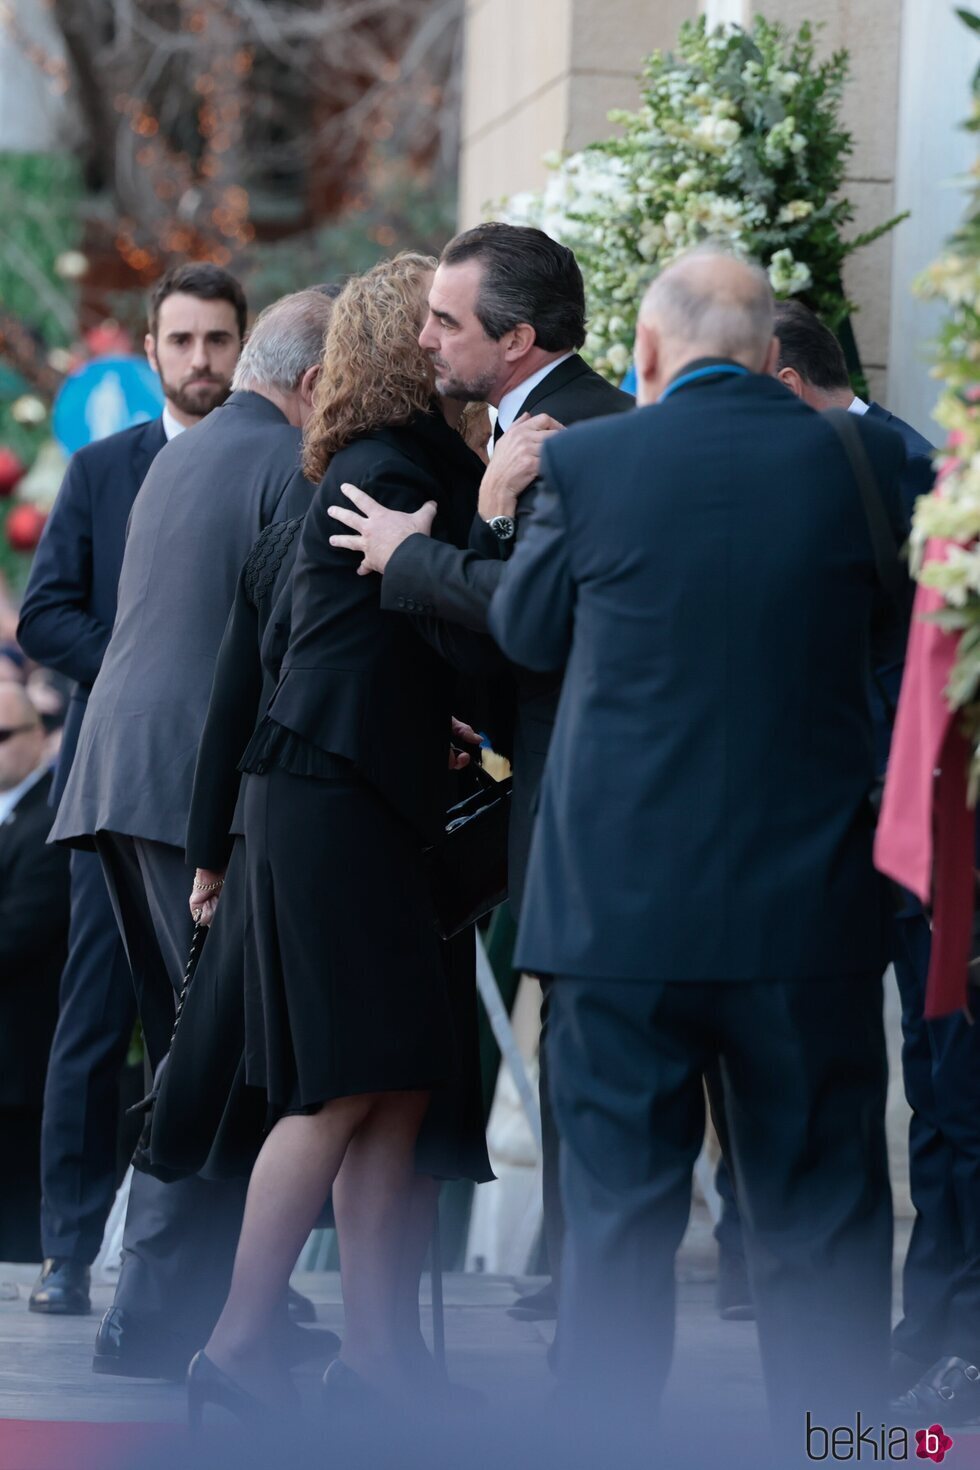 La Infanta Elena saluda a su primo Nicolás de Grecia en el funeral de Constantino de Grecia